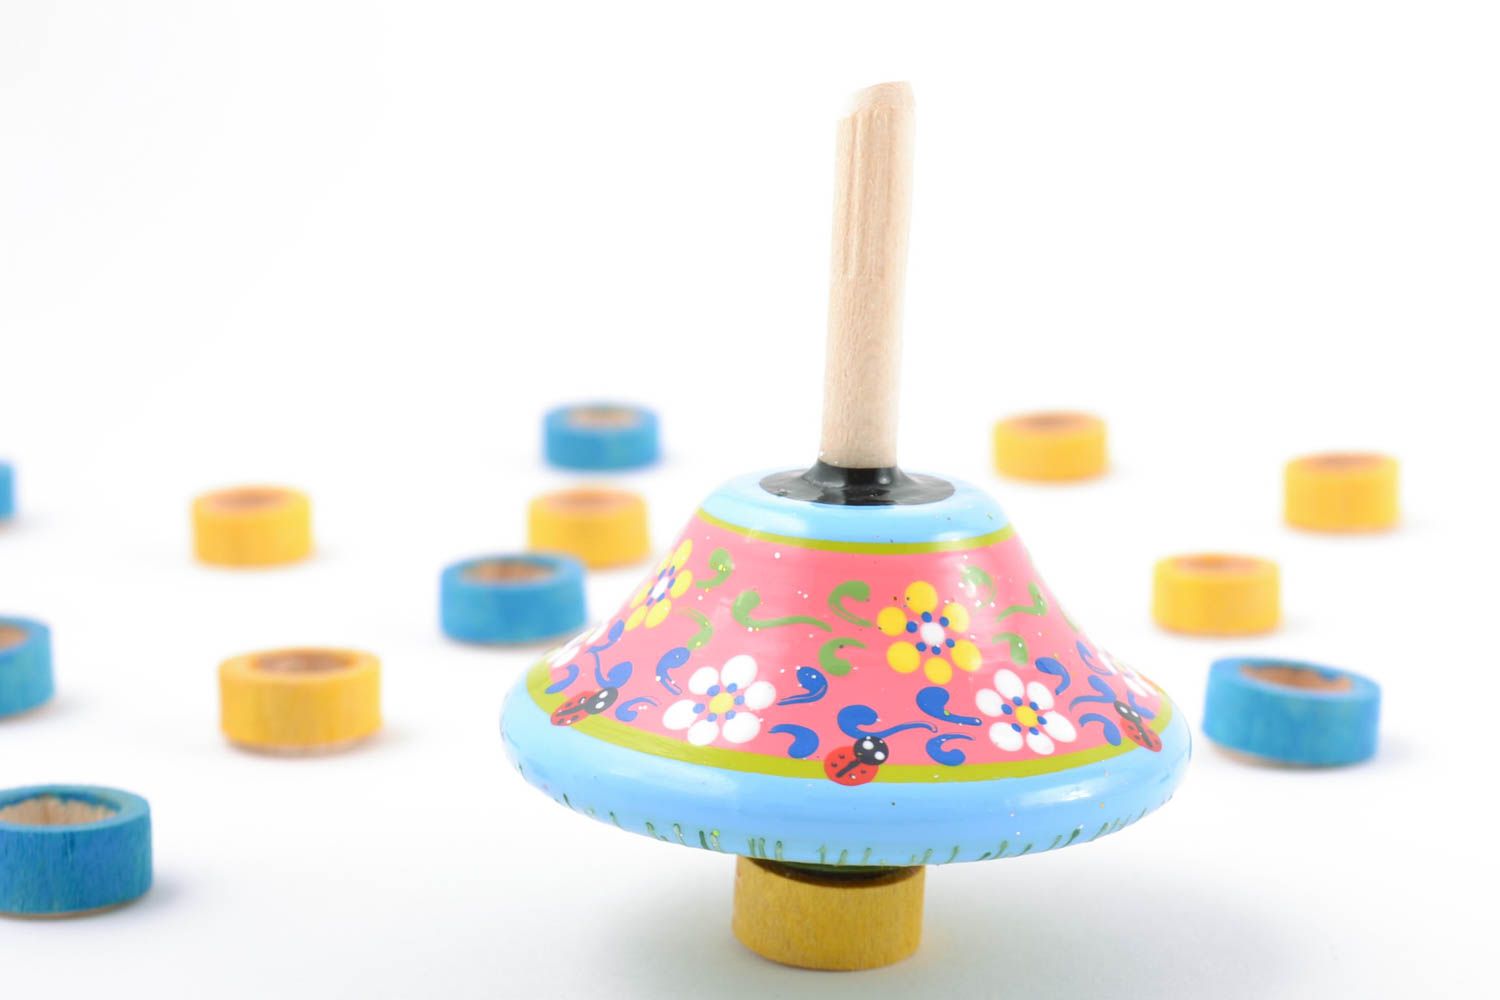 Handmade Kreisel Spielzeug aus Holz mit Ökofarben bemalt schön foto 1